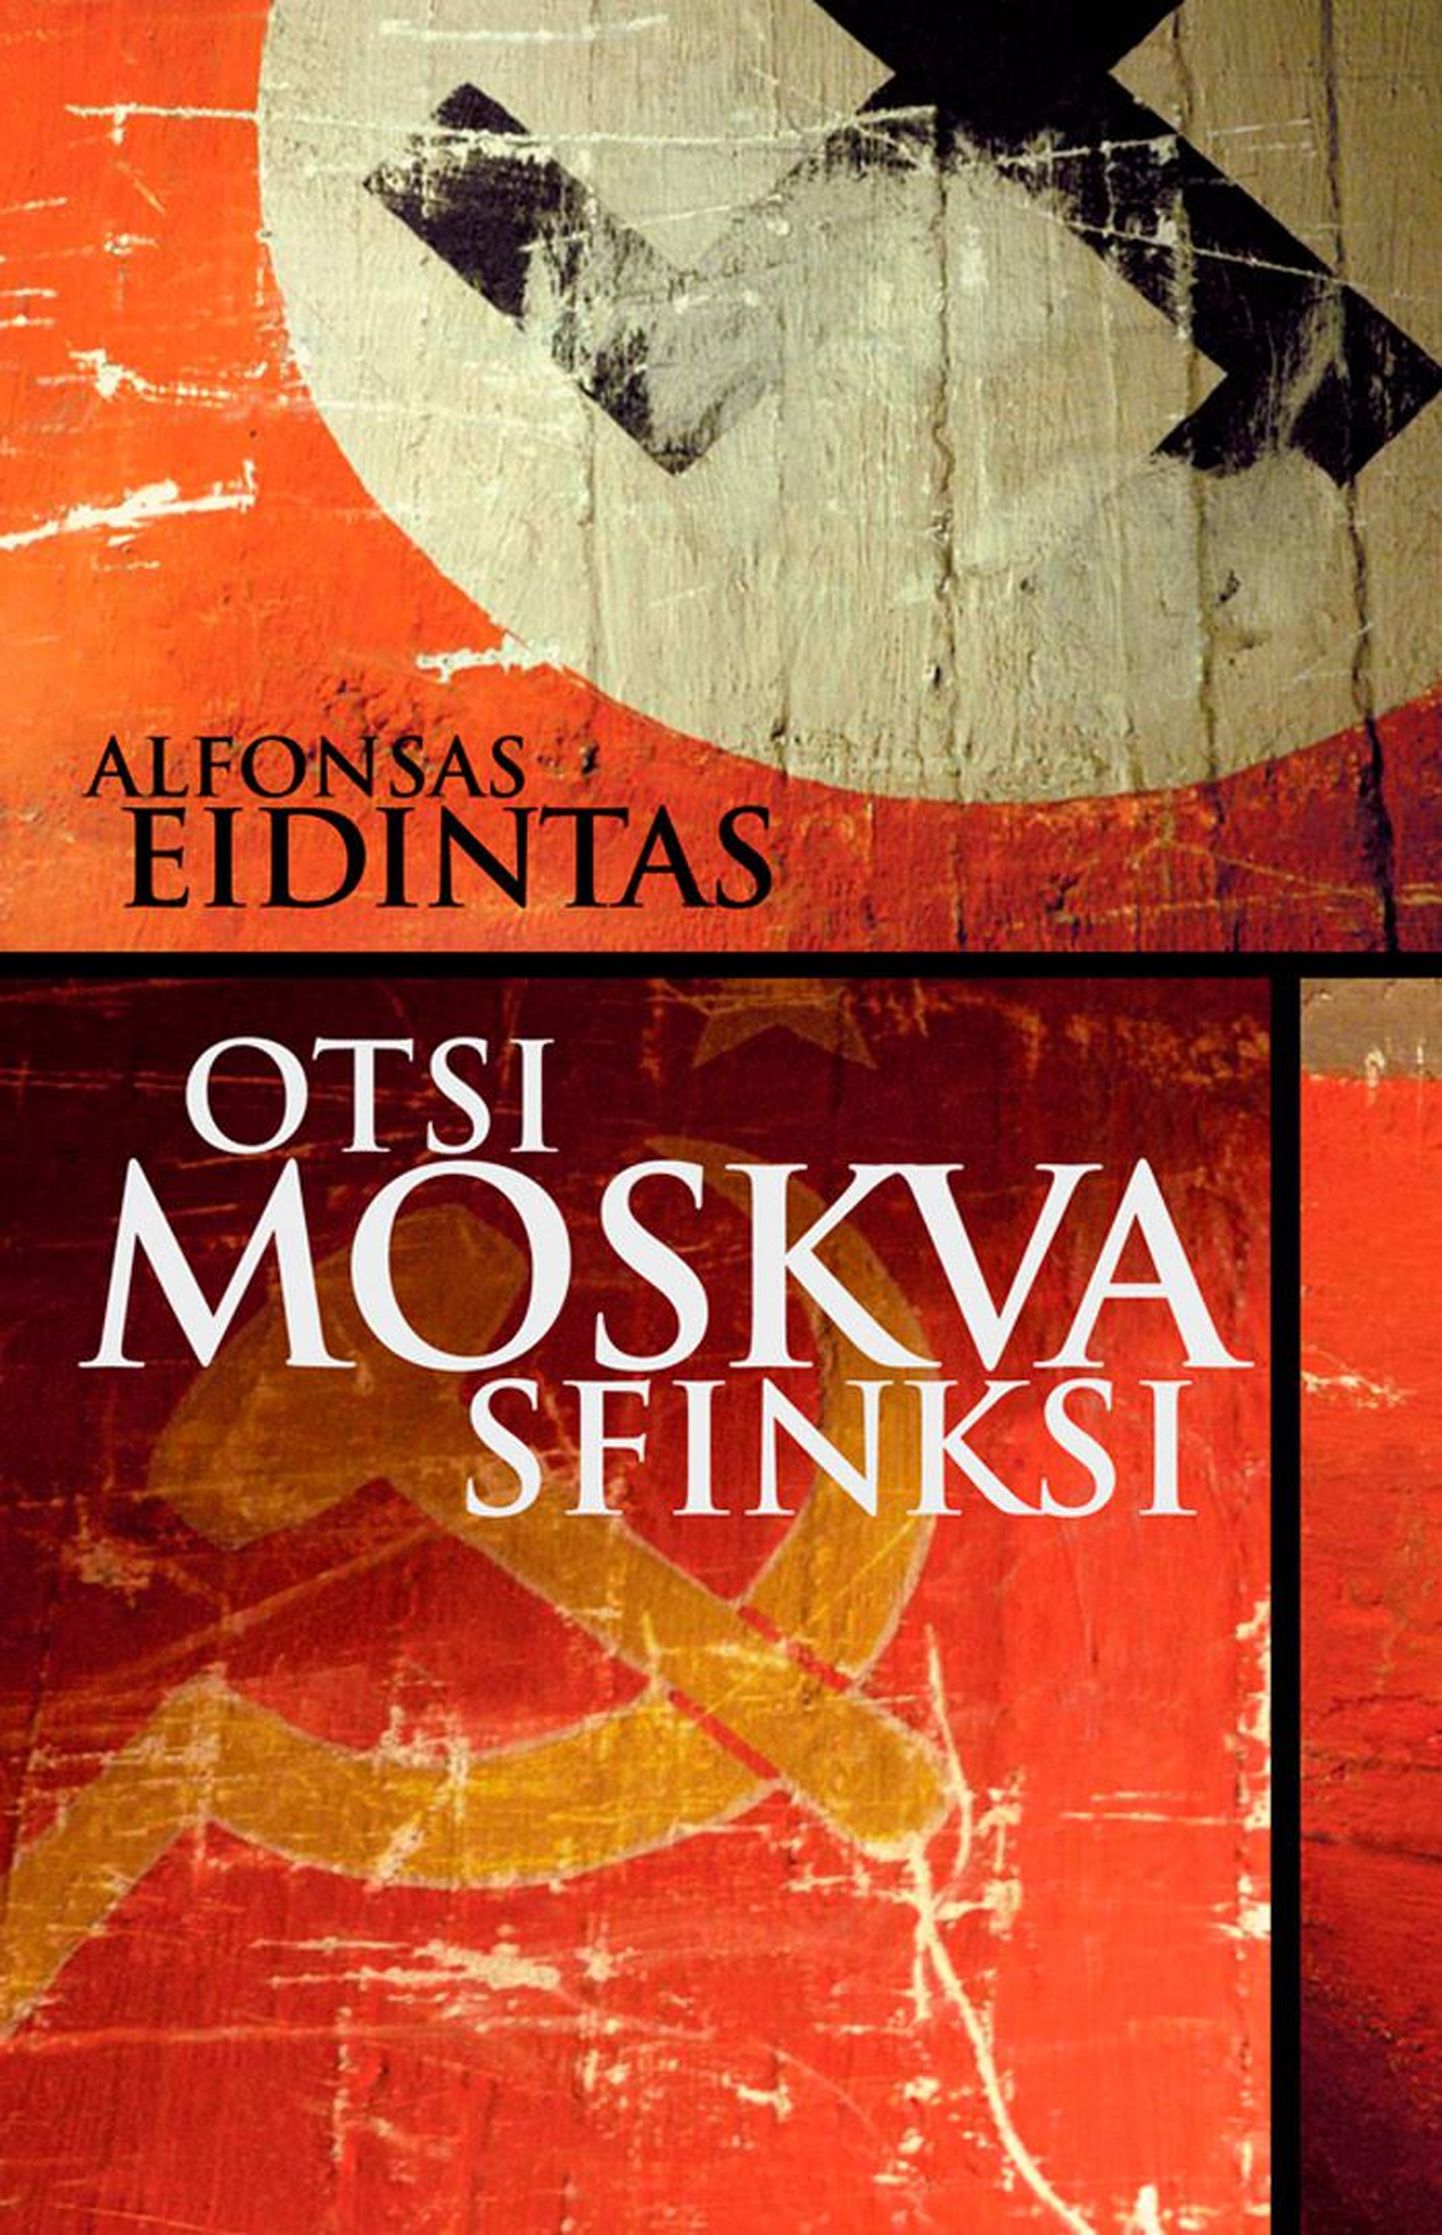 Raamat
Alfonsas Eidintas
«Otsi Moskva sfinksi»
 Varrak 2010
 Tõlkinud Mart Tarmak